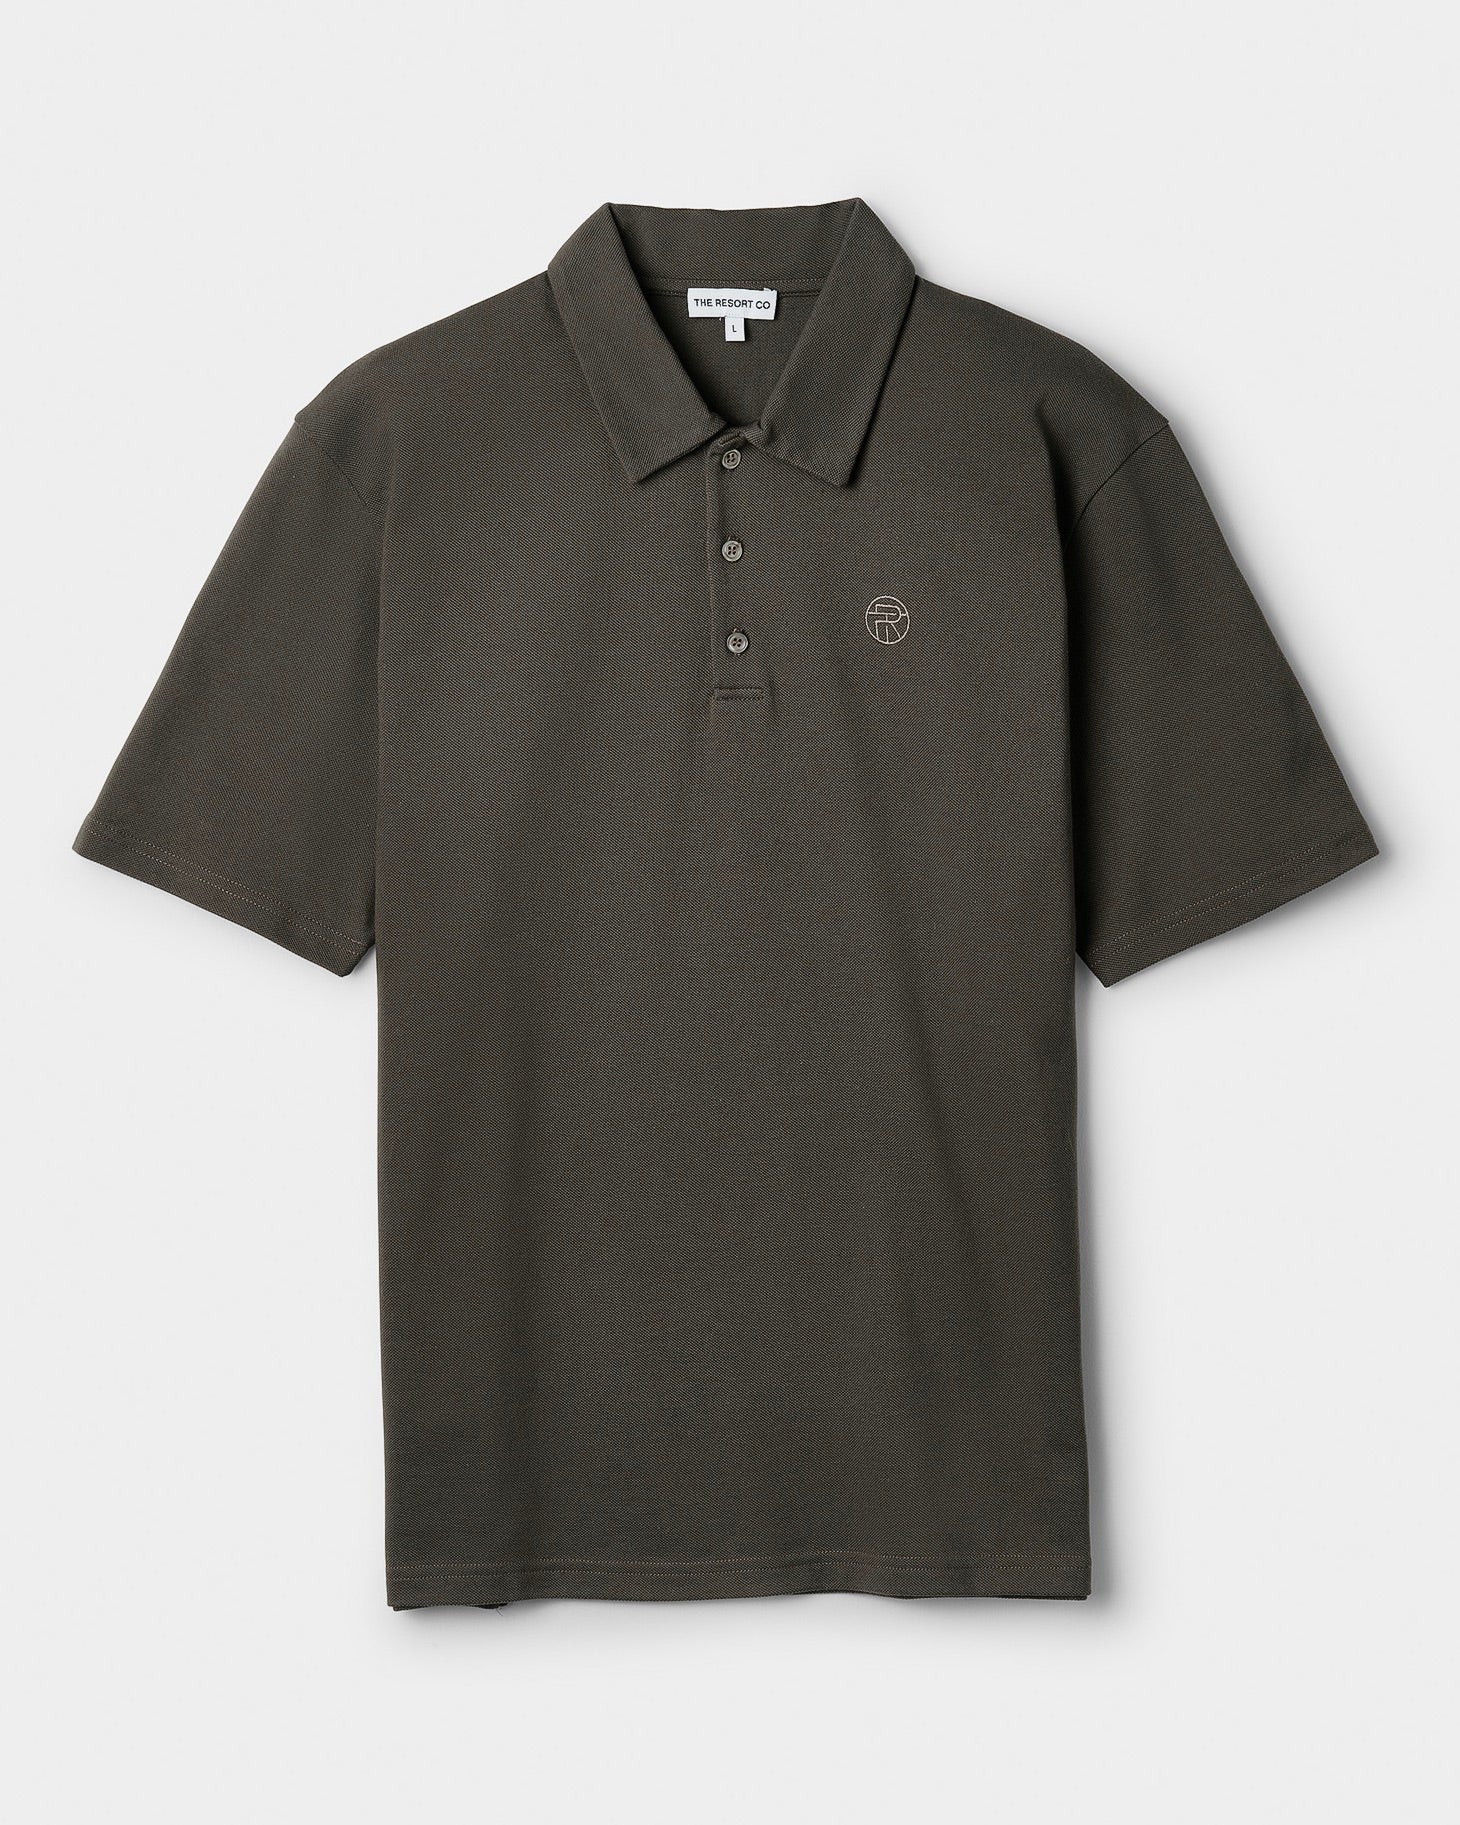 Piqué Polo Shirt Khaki - THE RESORT CO